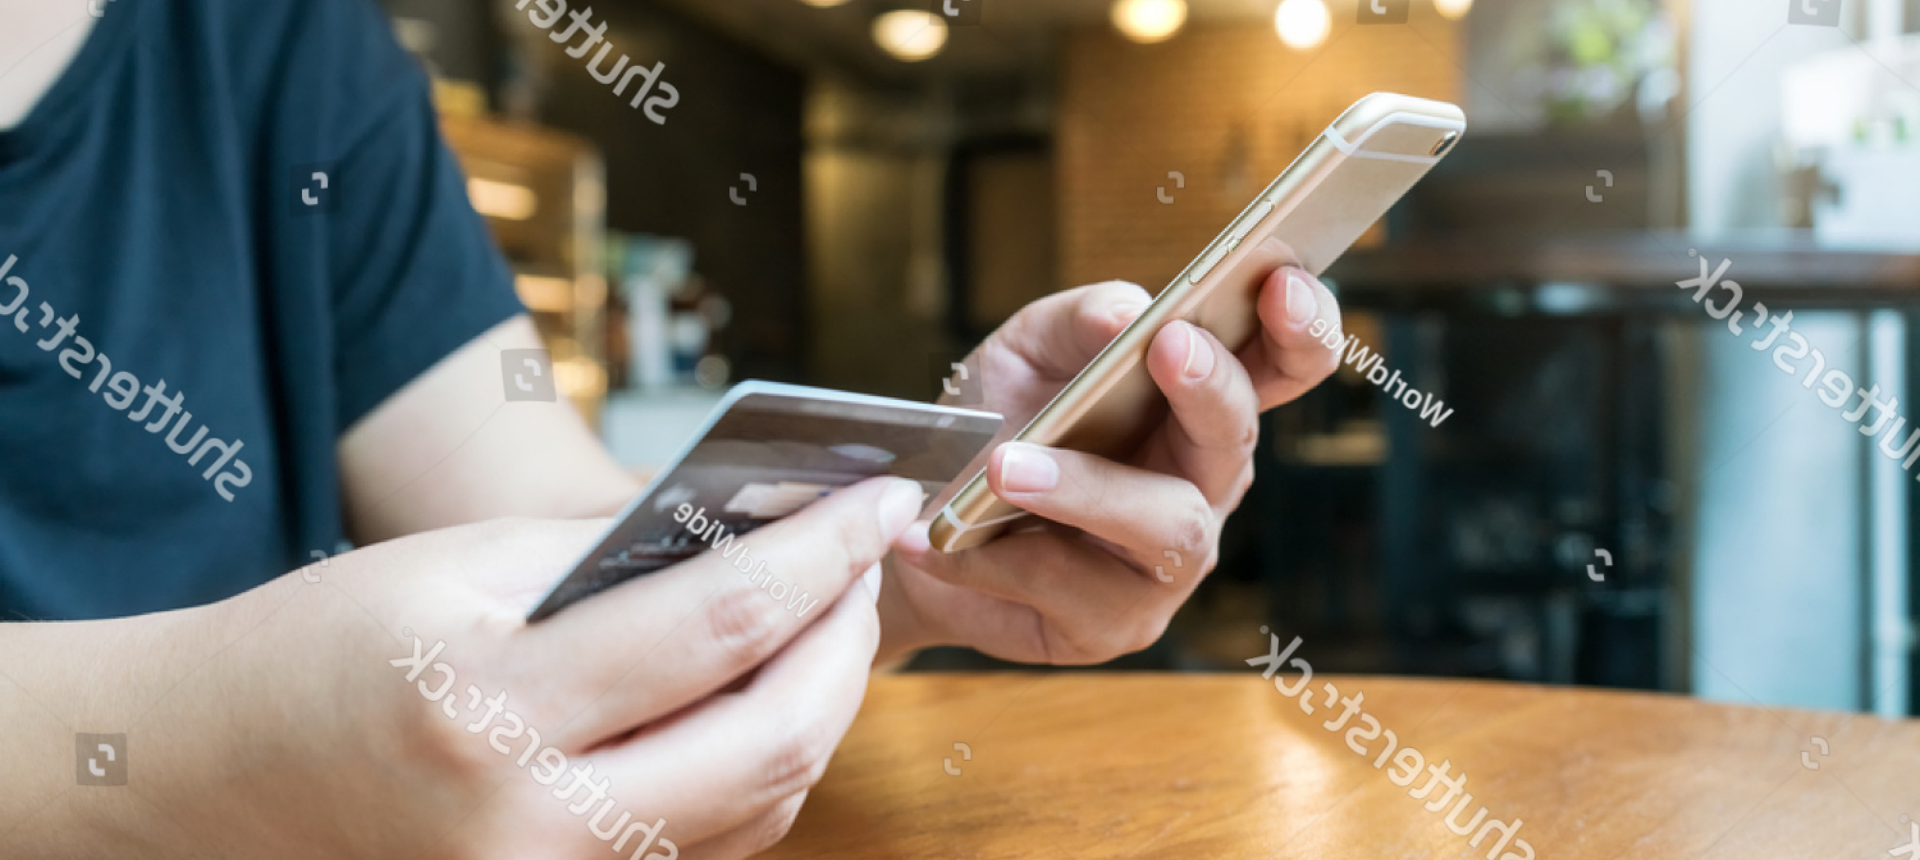 Mãos segurando cartão e celular sobre a mesa - Matera